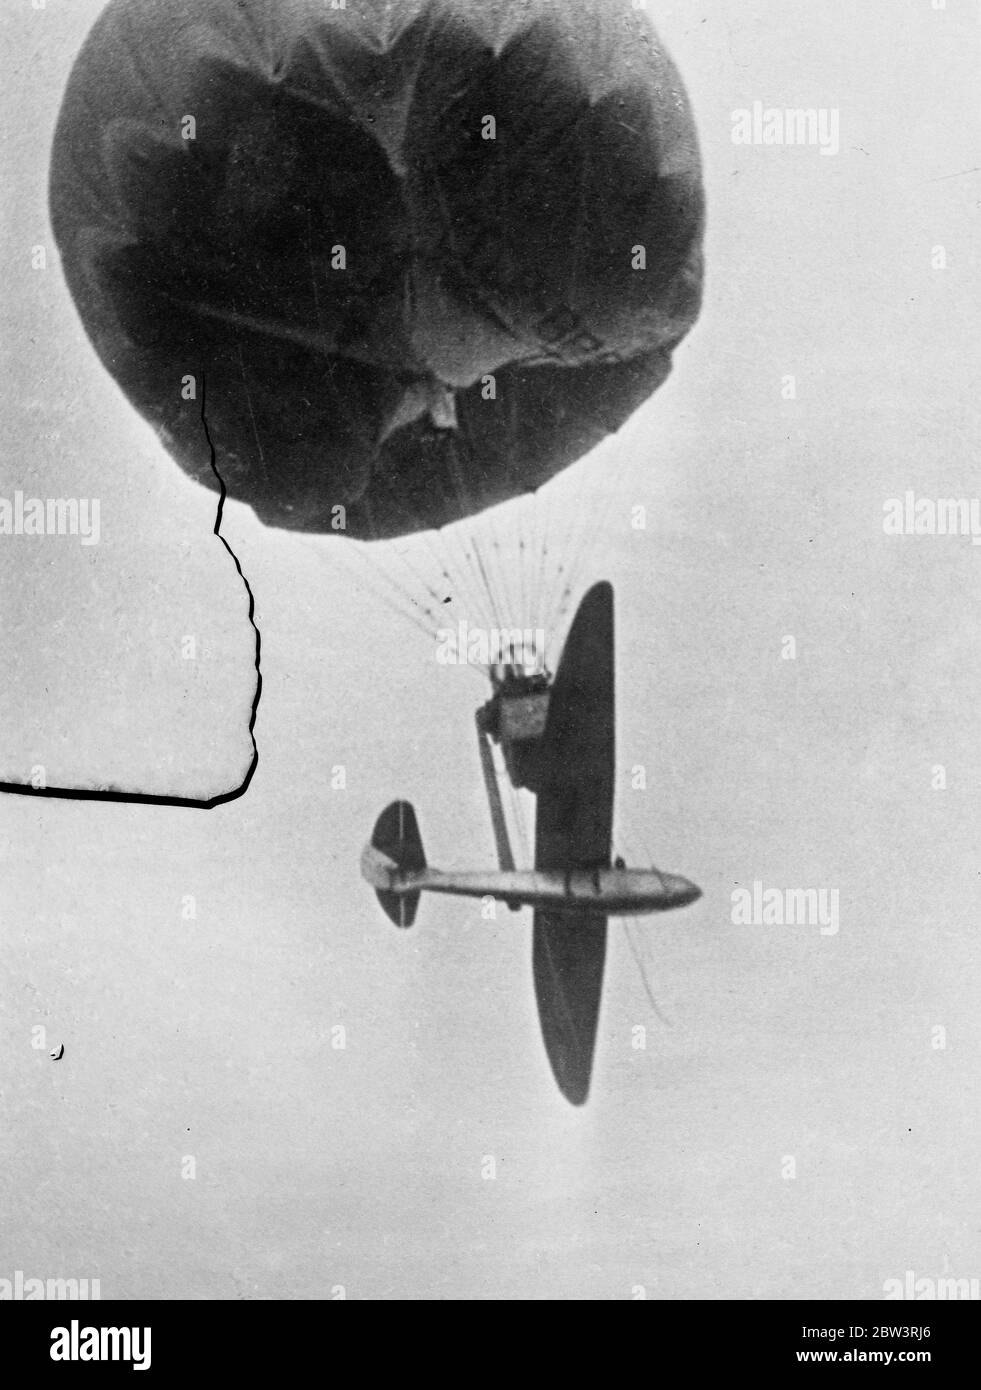 Segelflugzeug zum ersten Mal hochgezogen und mit dem Ballon abgeschleppt. Bild kurz vor seiner Veröffentlichung aufgenommen wurde, um seinen erfolgreichen Flug zu machen. 13. September 1935 Stockfoto